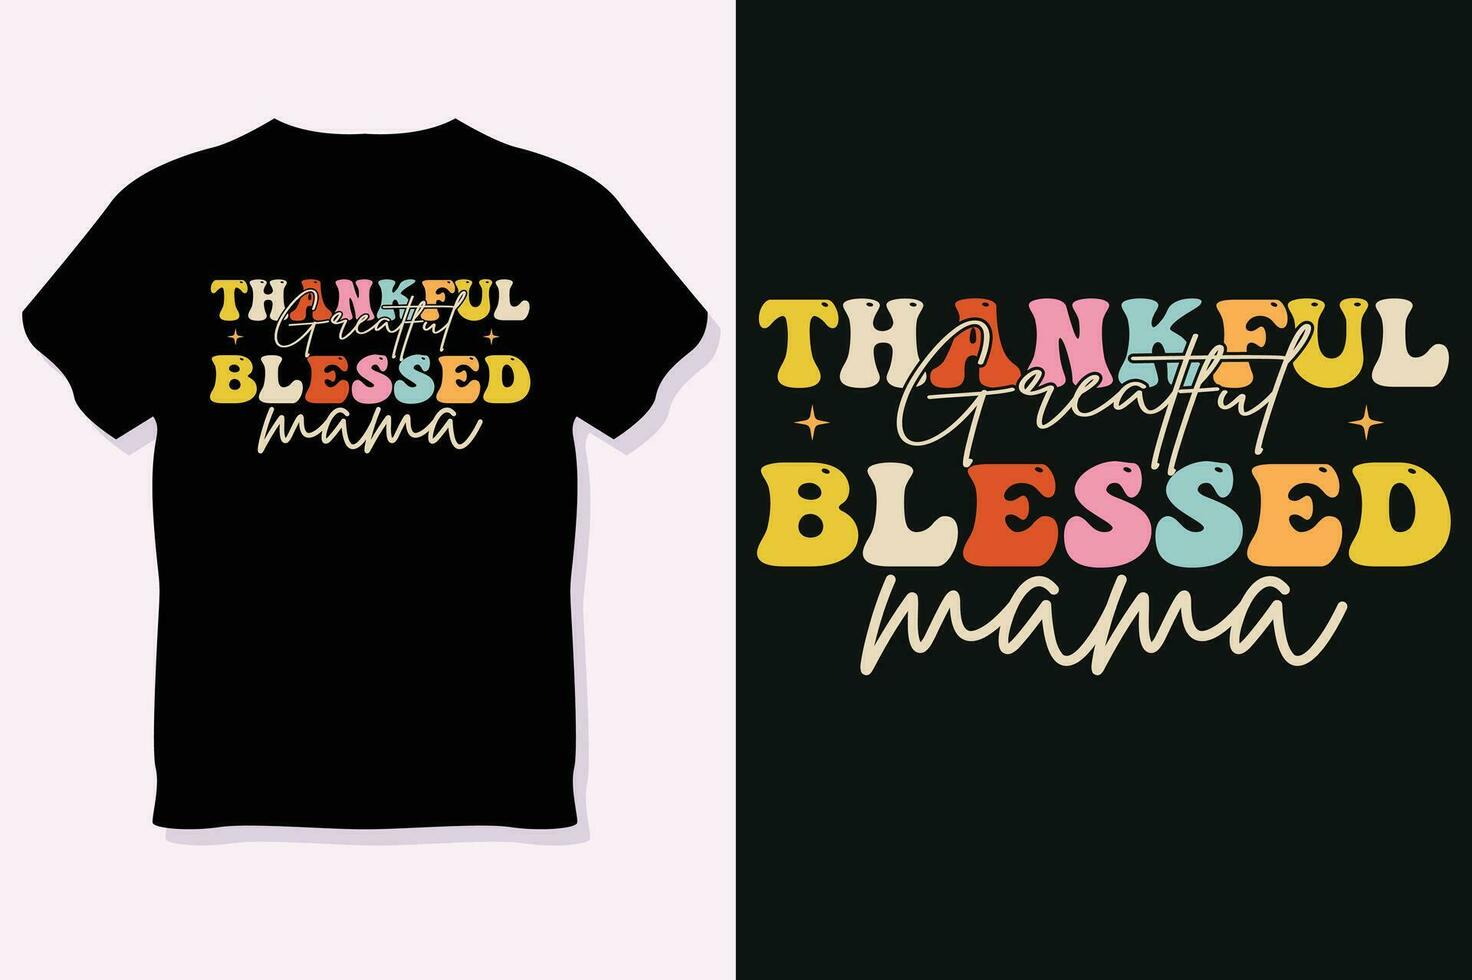 größte dankbar gesegnet Mutter, das Erntedankfest Tag T-Shirt Design vektor